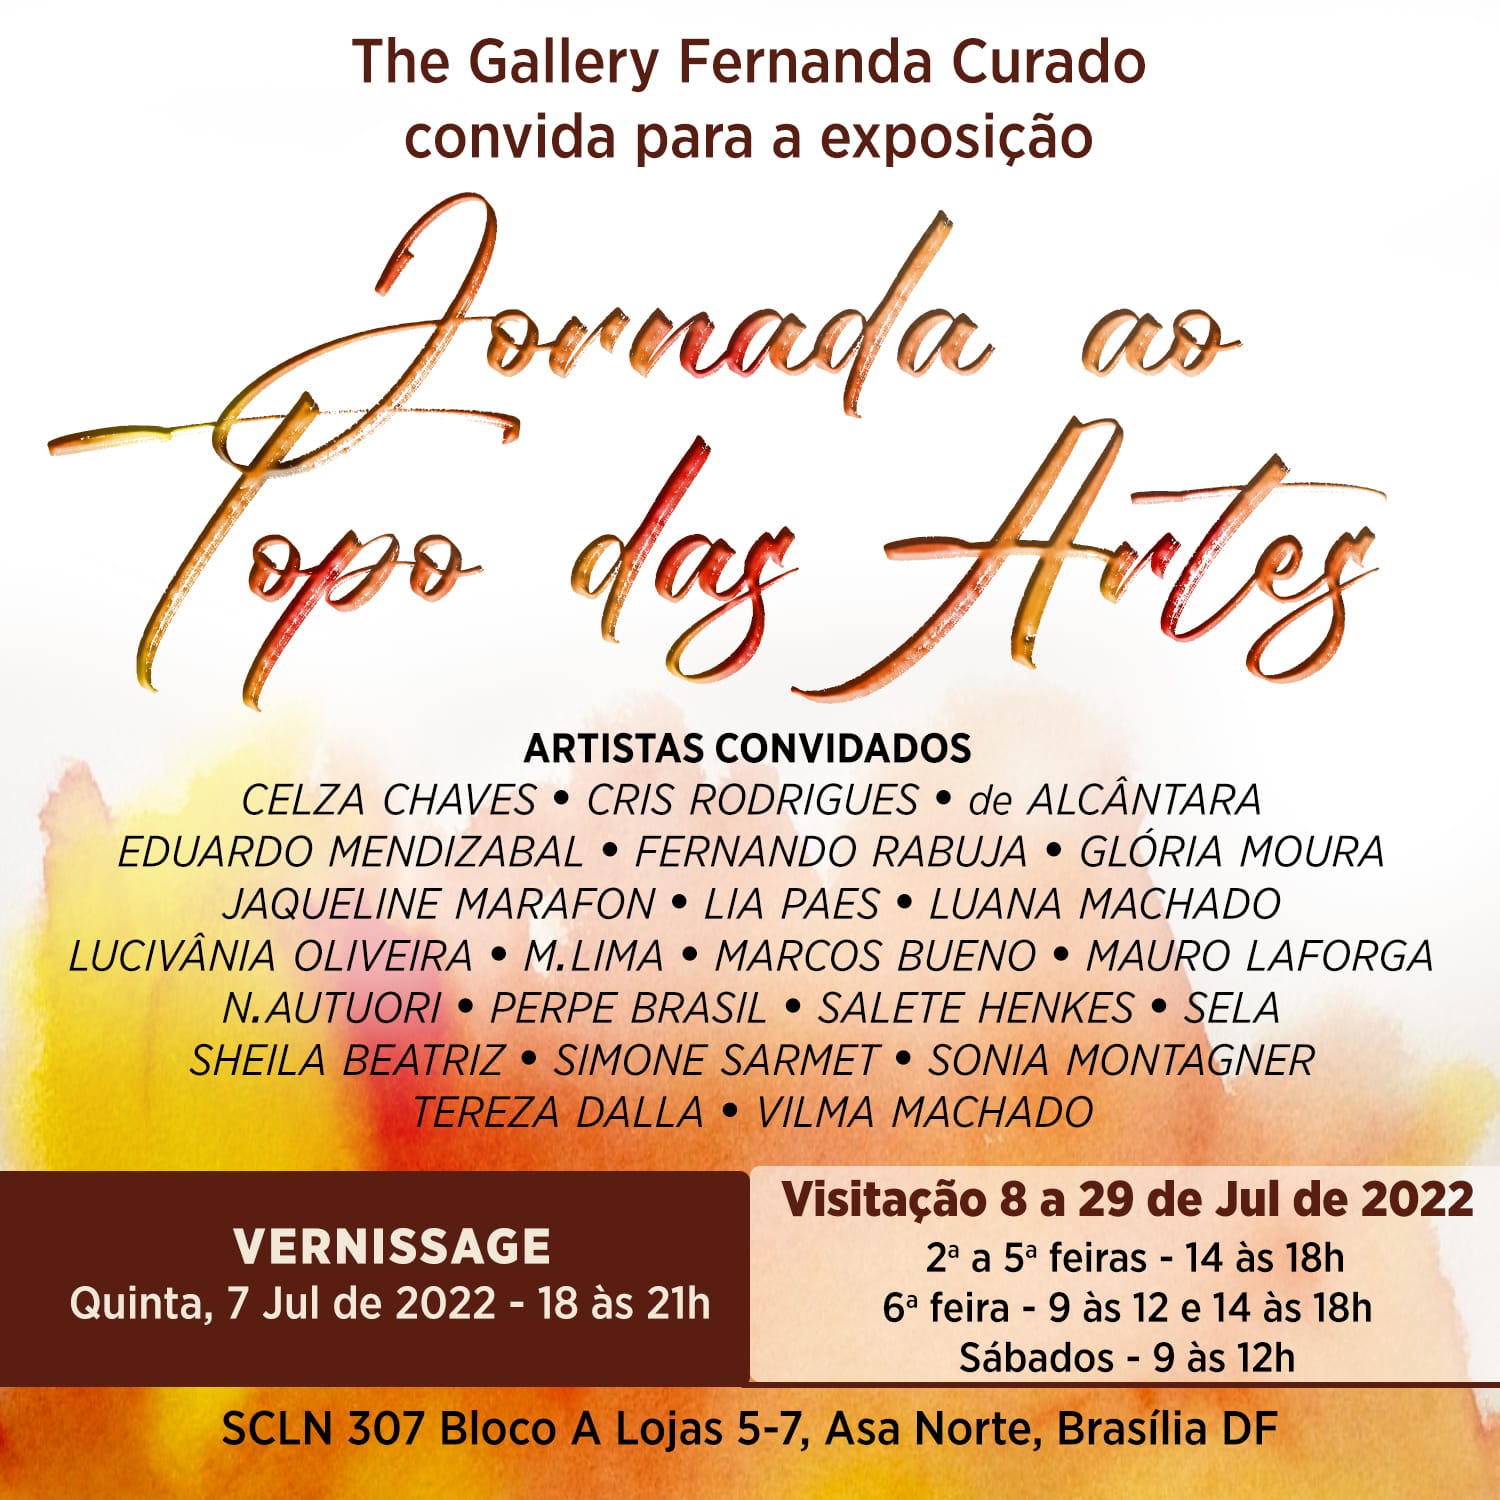 Convite para a exposição Jornada ao Topo das Artes, na The Gallery Fernanda Curado, em 7 de julho de 2022